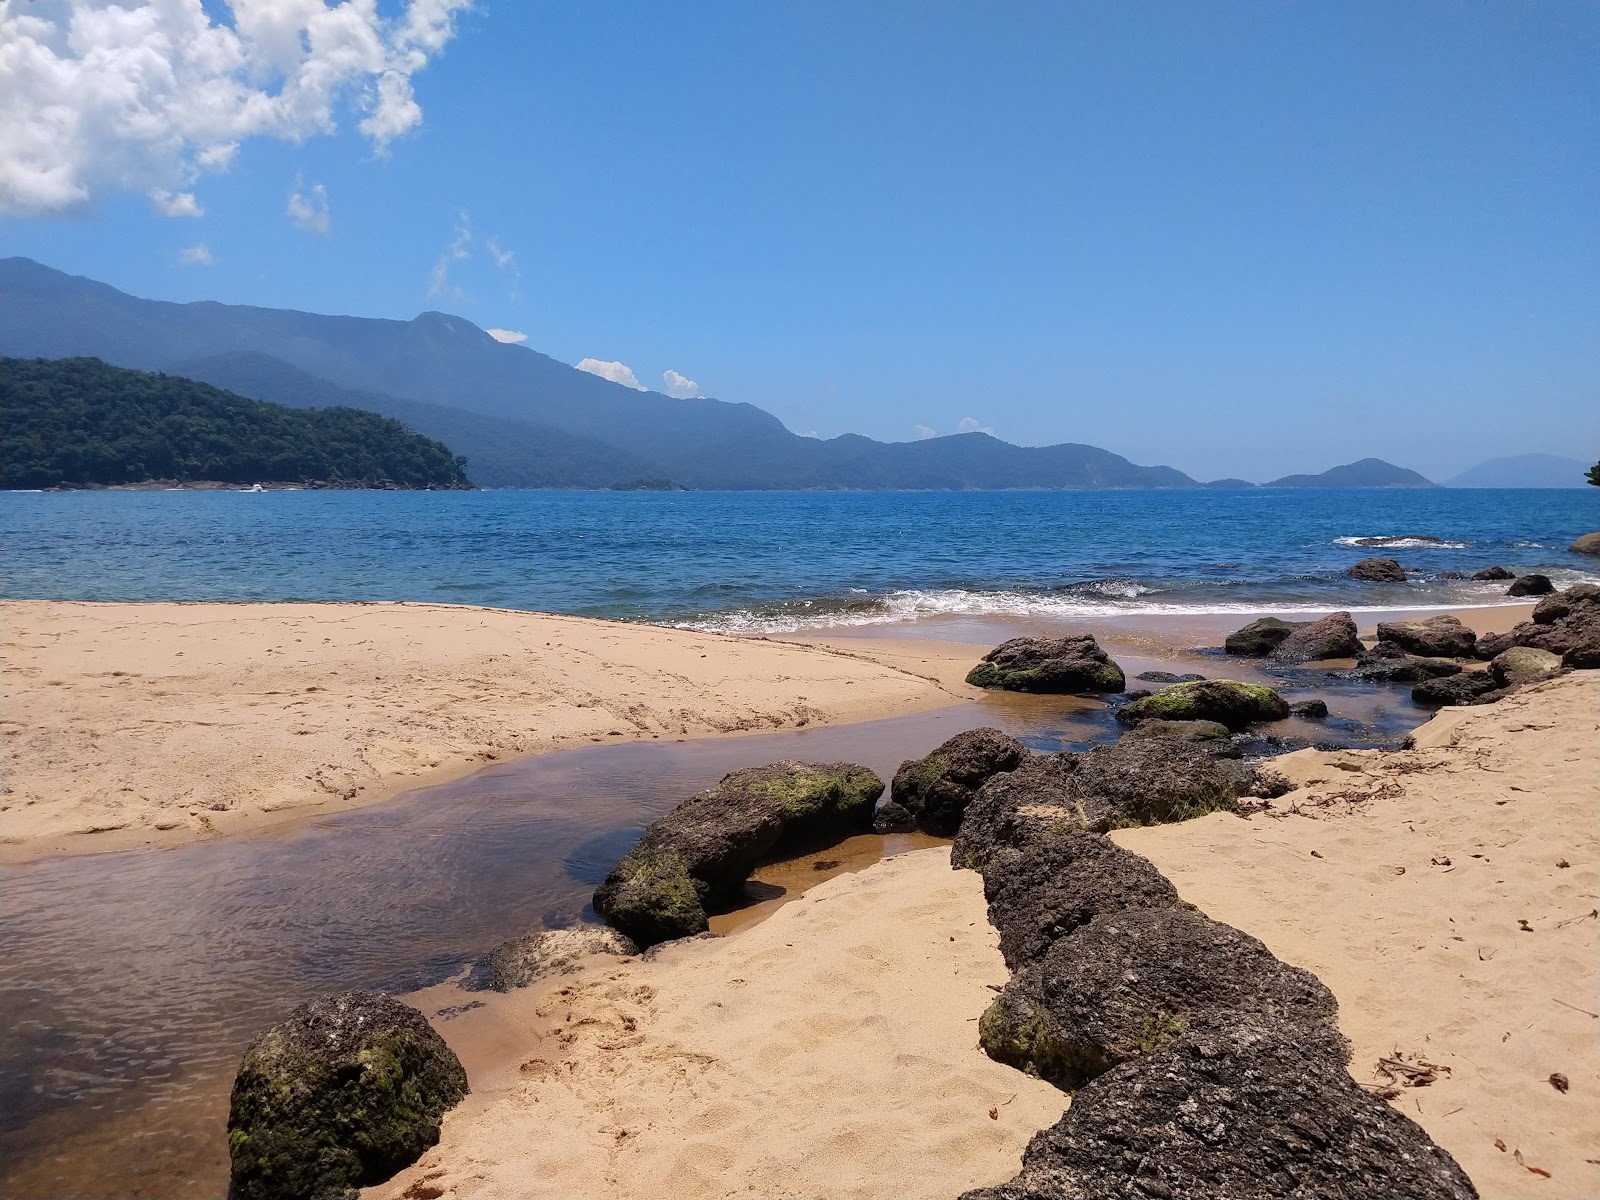 Valokuva Praia Vermelhaista. sijaitsee luonnonalueella